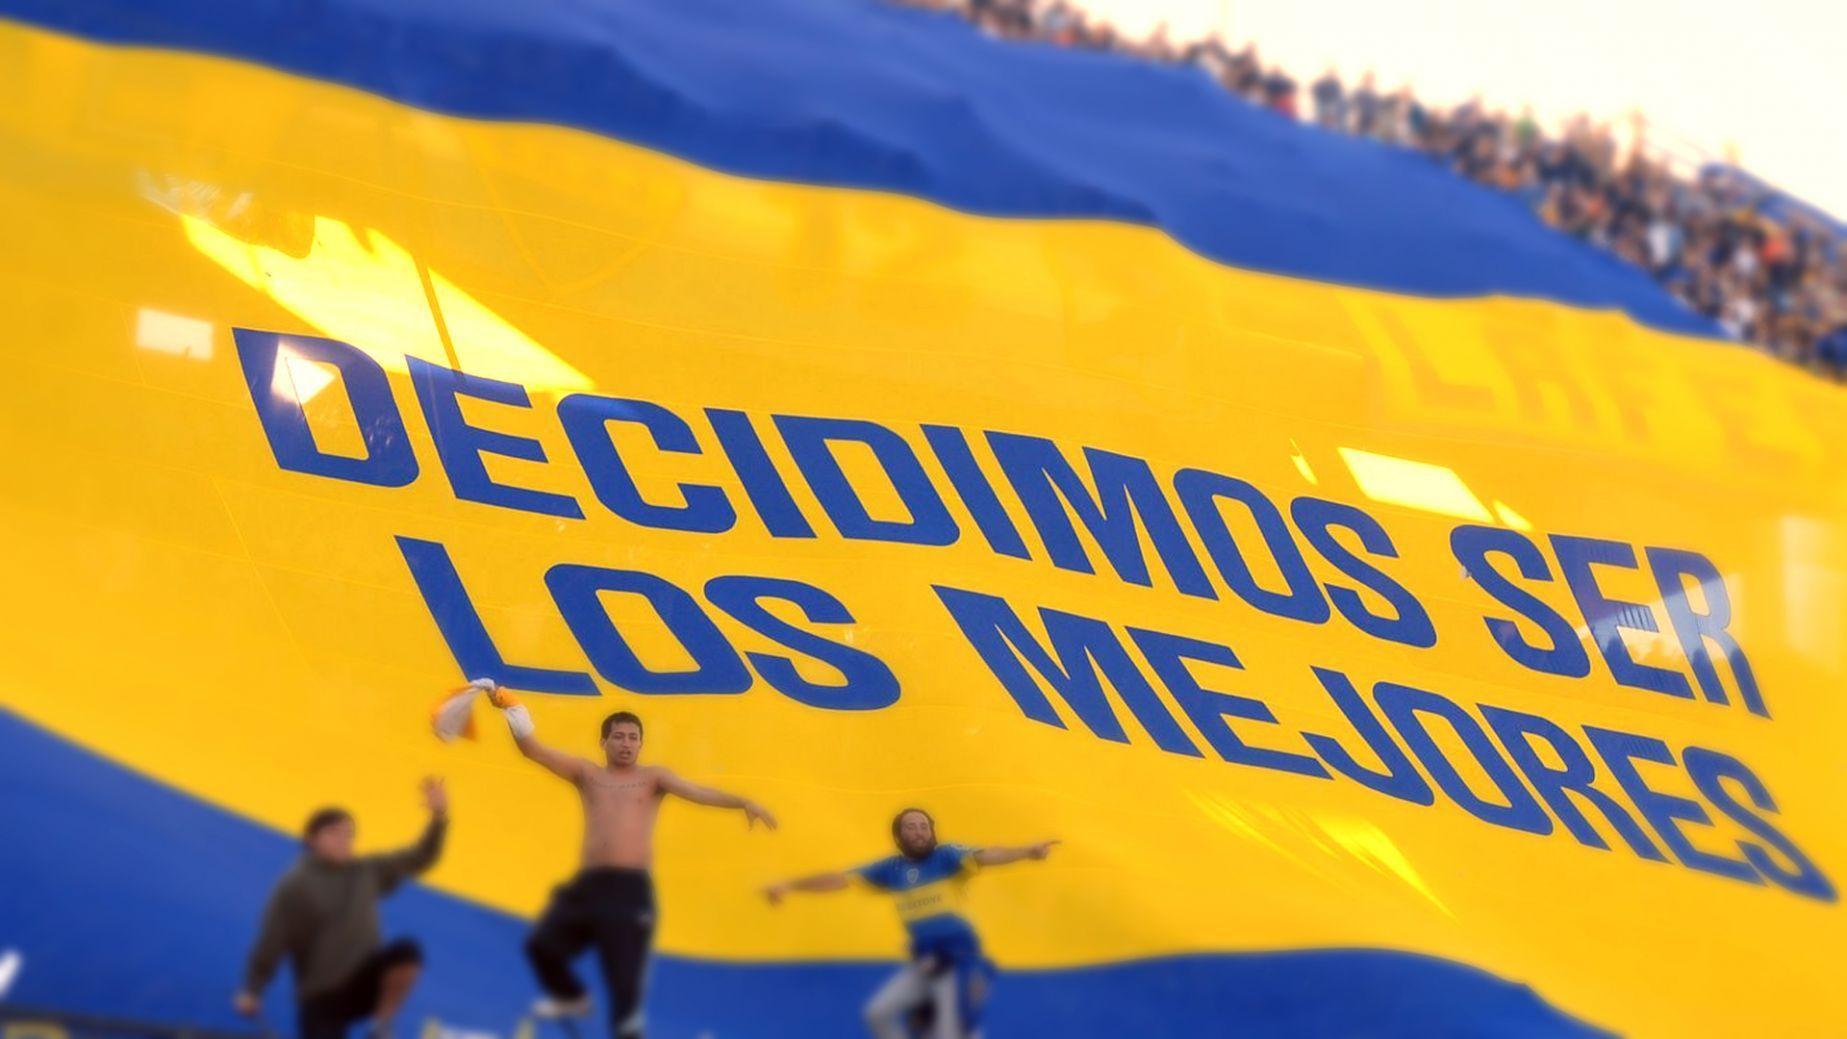 Wallpaper, textos y banners: CA Boca Juniors!